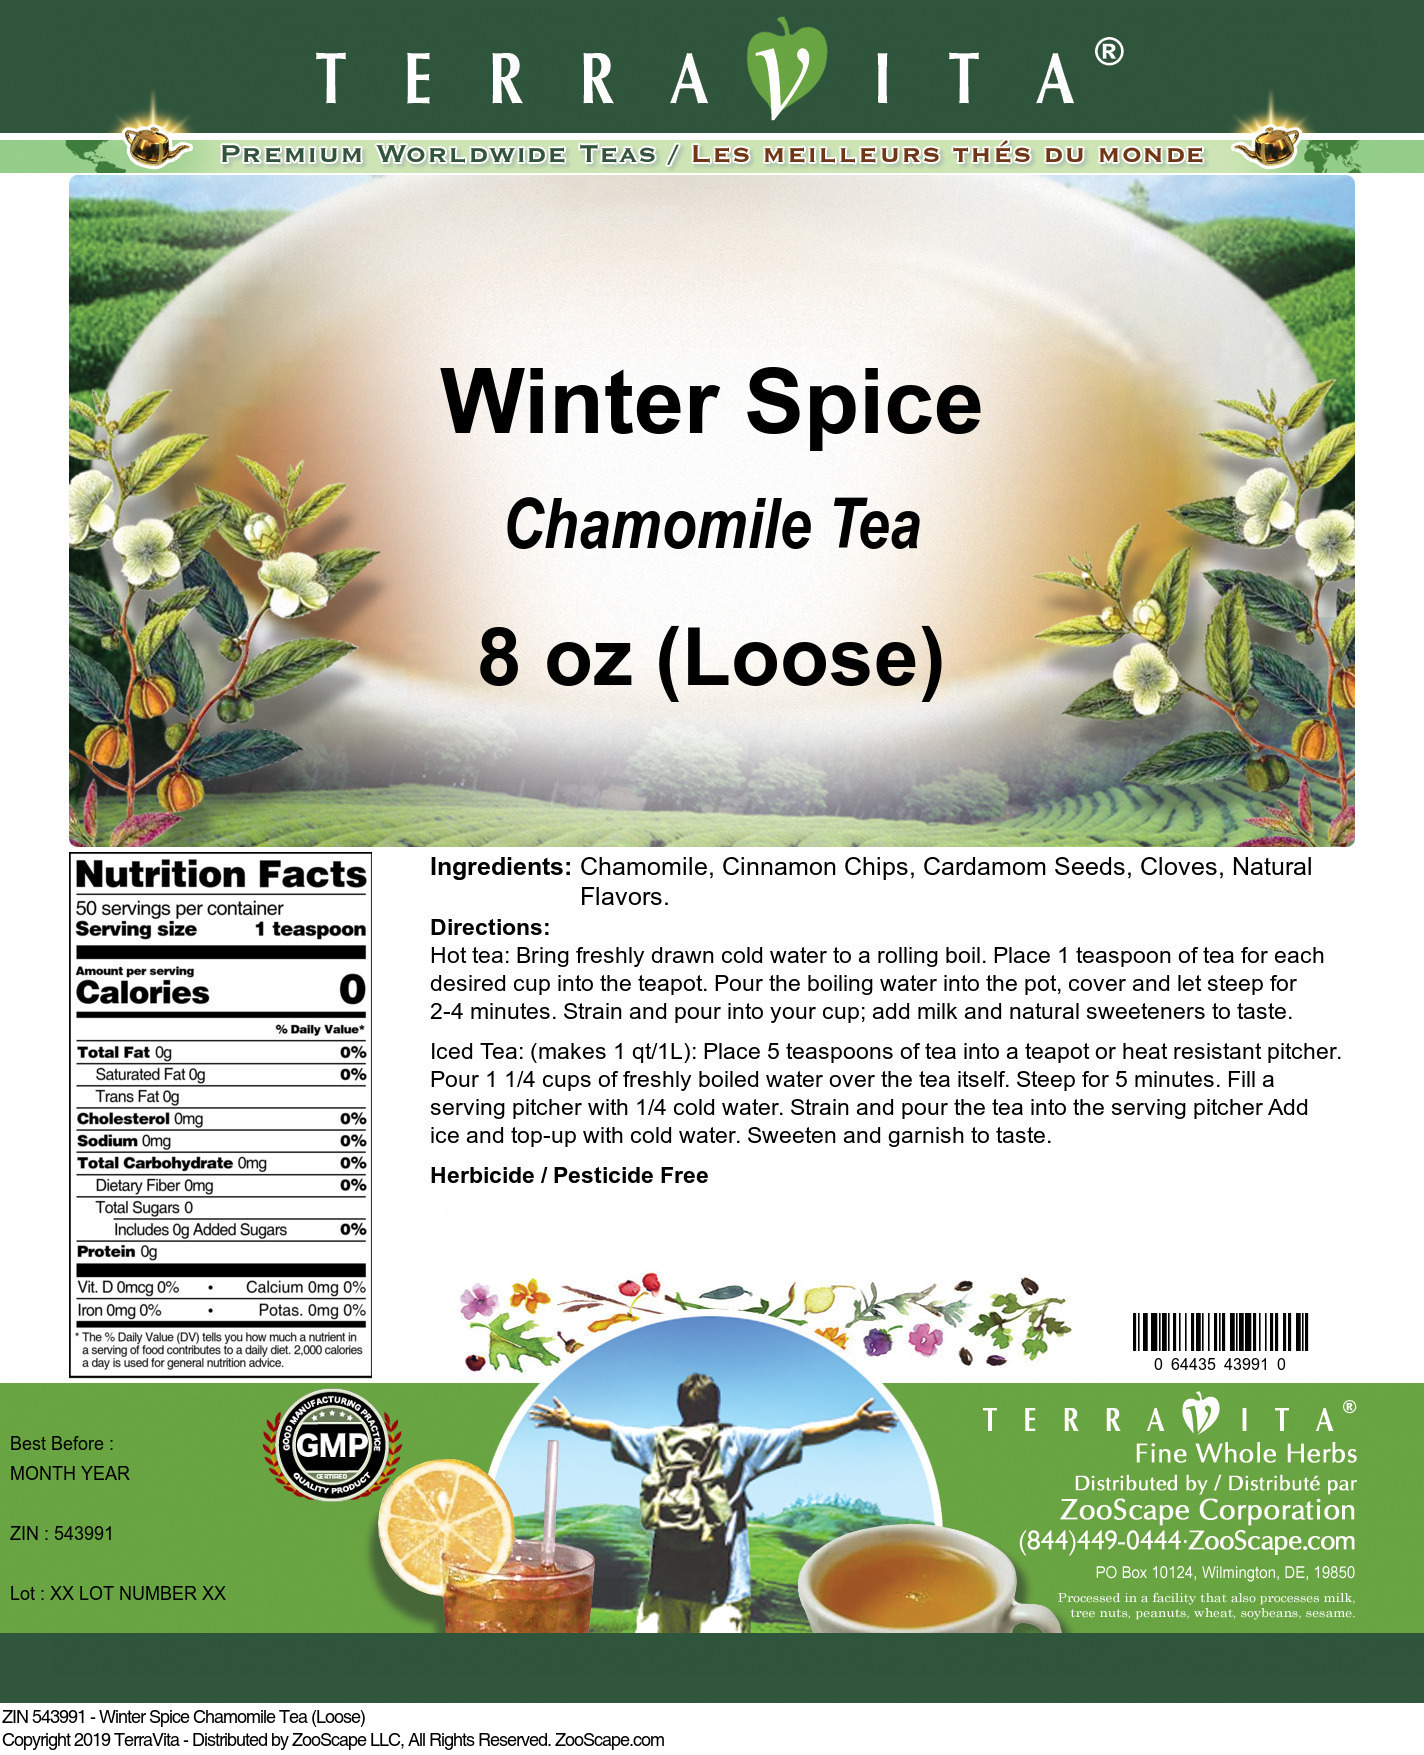 Winter Spice Chamomile Tea (Loose) - Label